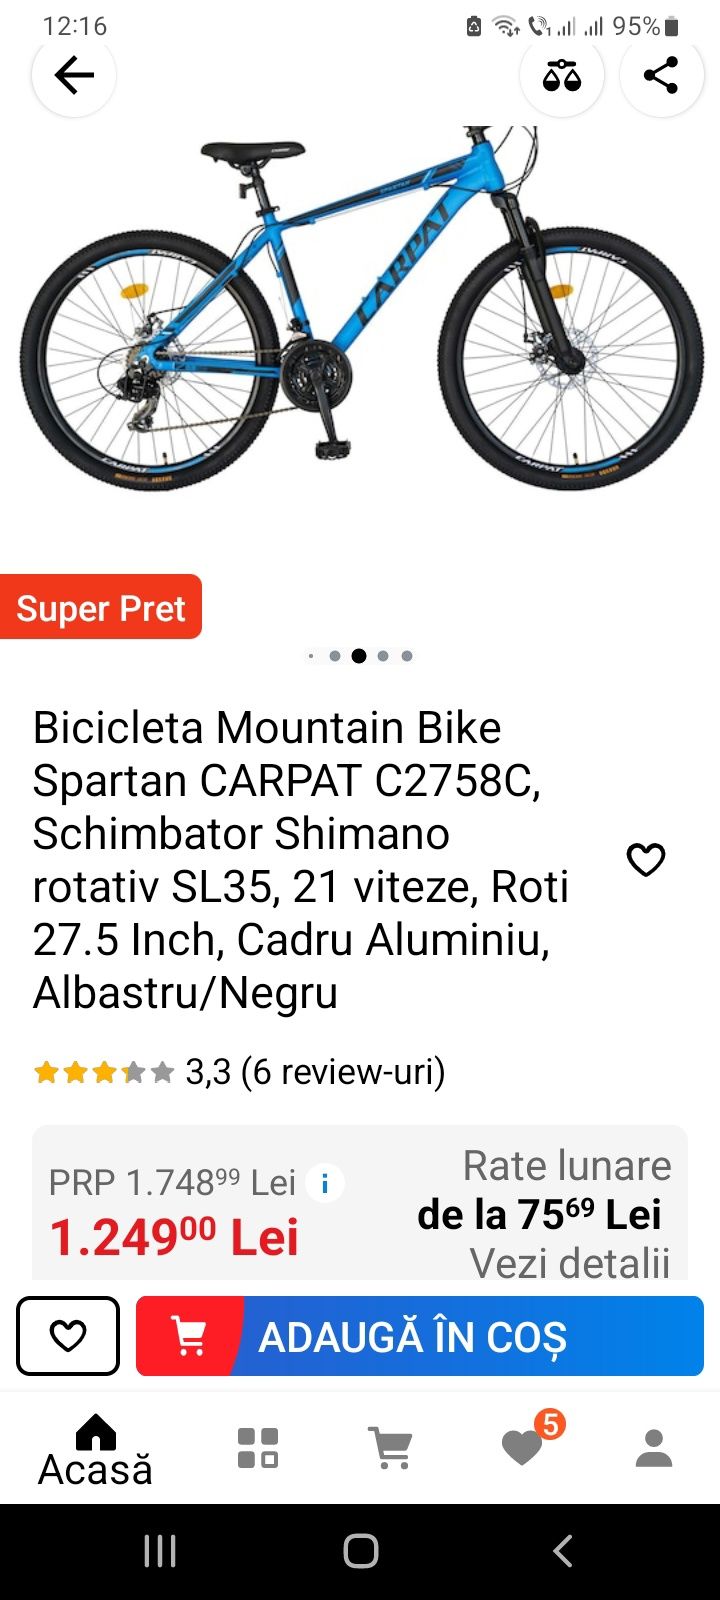 Bicicletă Mountain Bike Spartan Carpat C2758C,Albastru/Negru